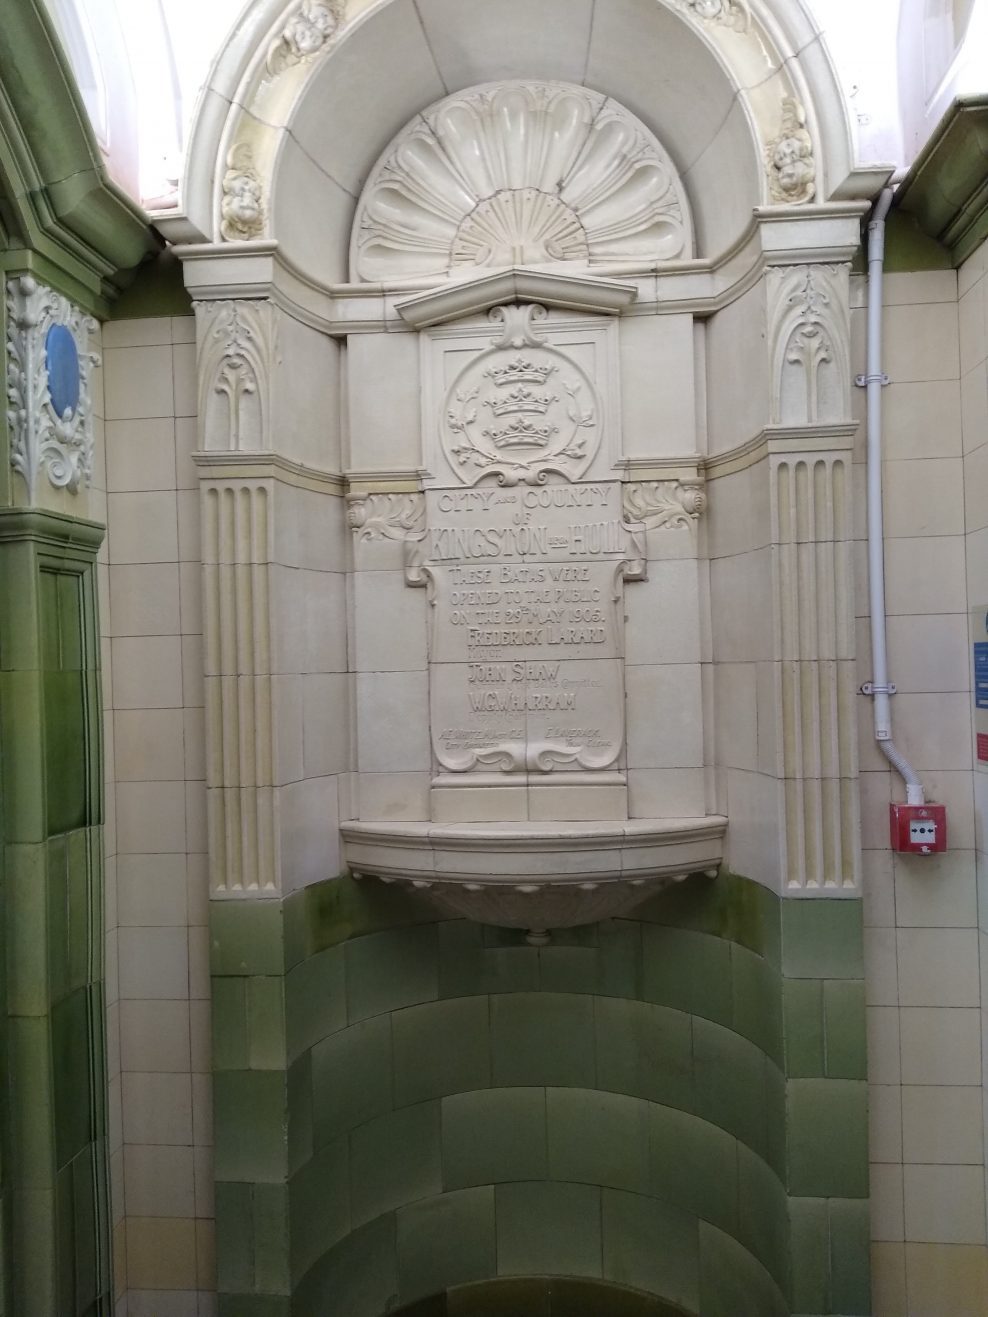 Beverley Road Baths, Hull